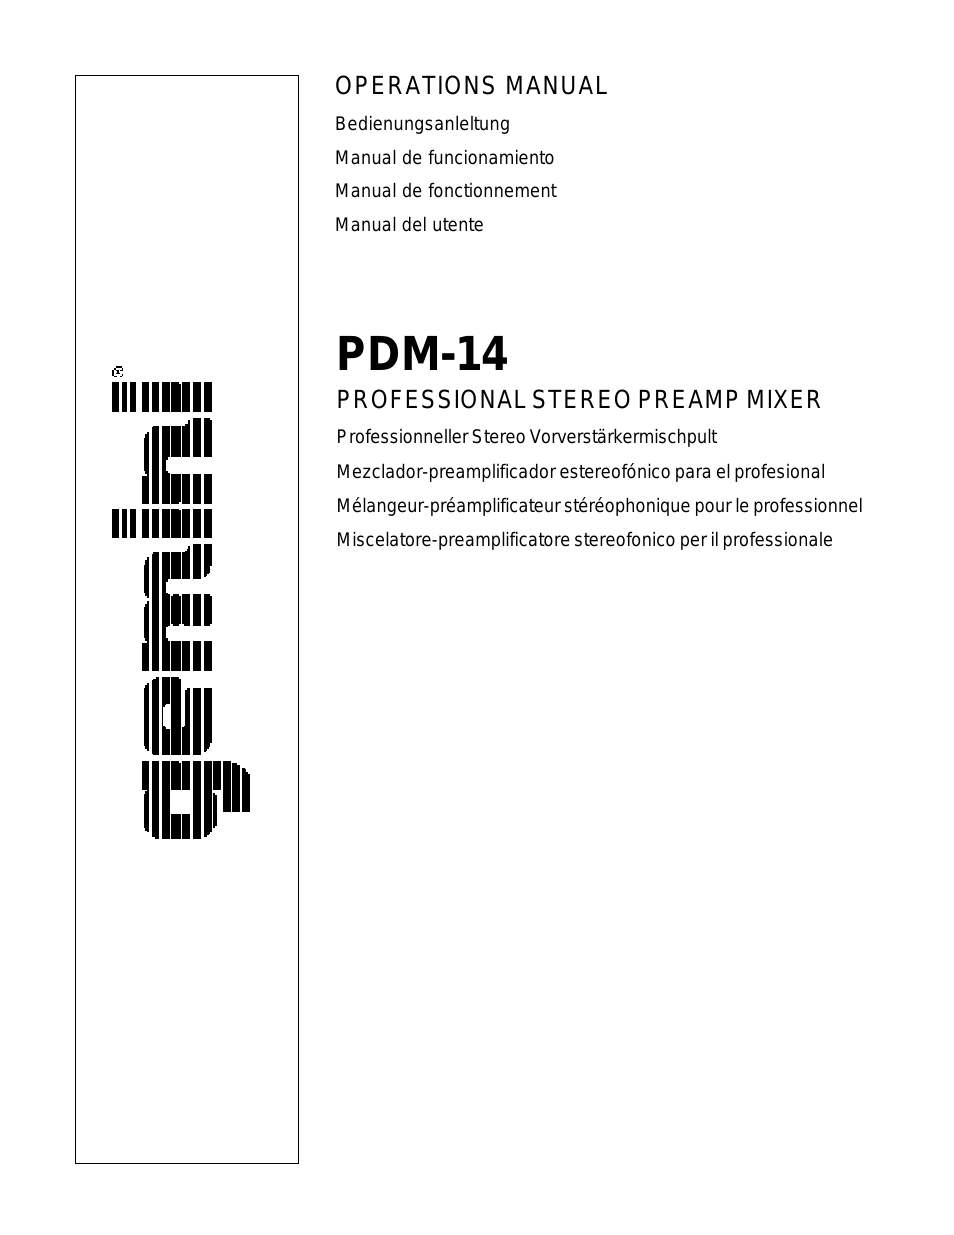 PDM-14